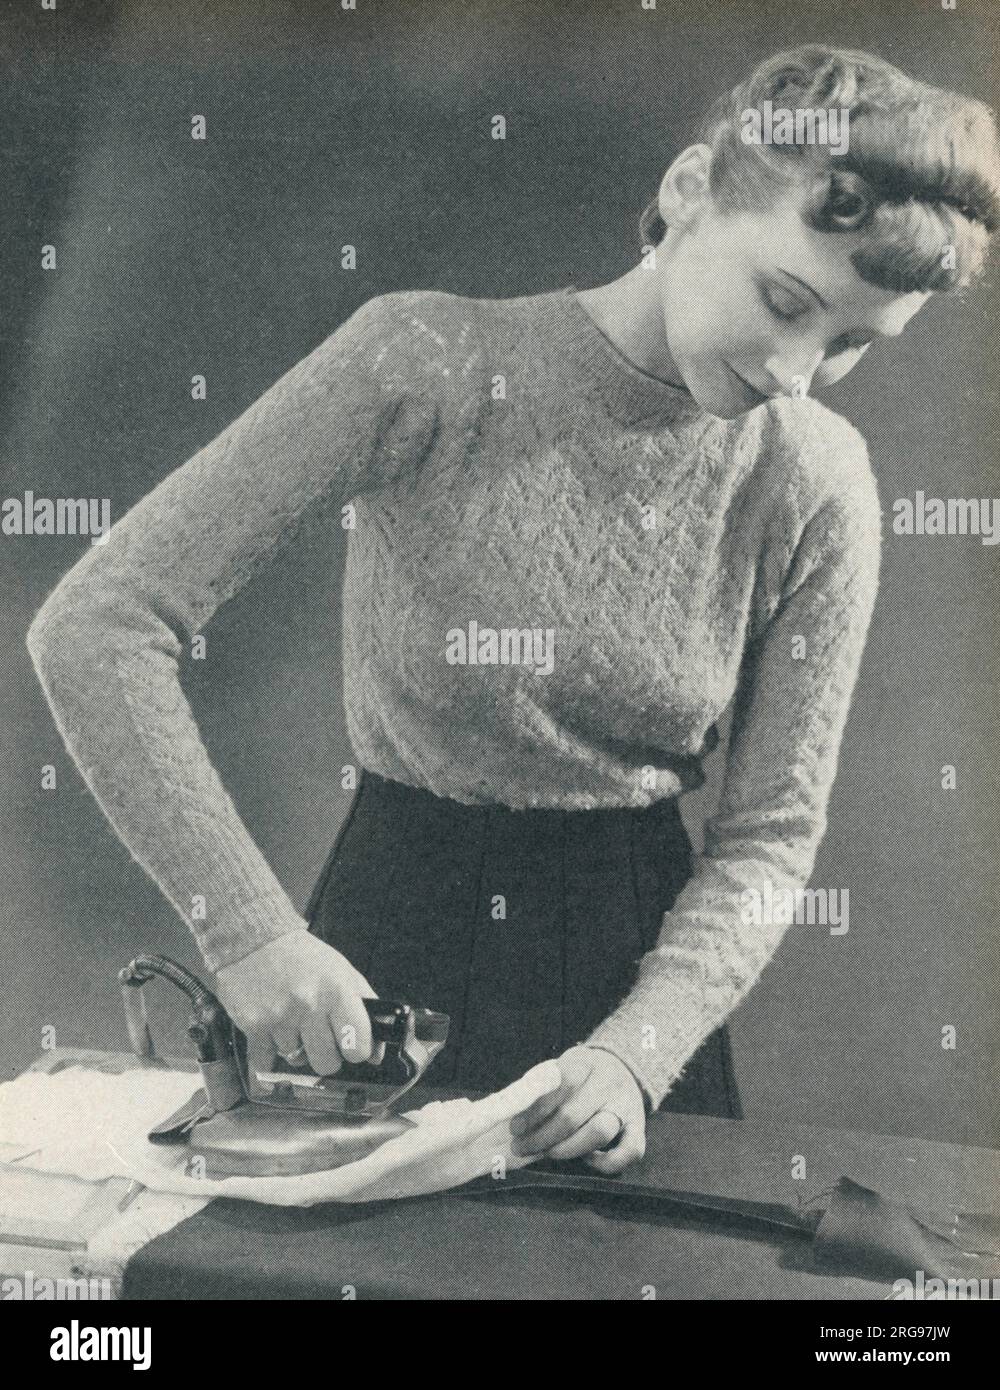 Donna che usa un ferro da stiro caldo per premere una cucitura sotto un panno umido. Foto Stock